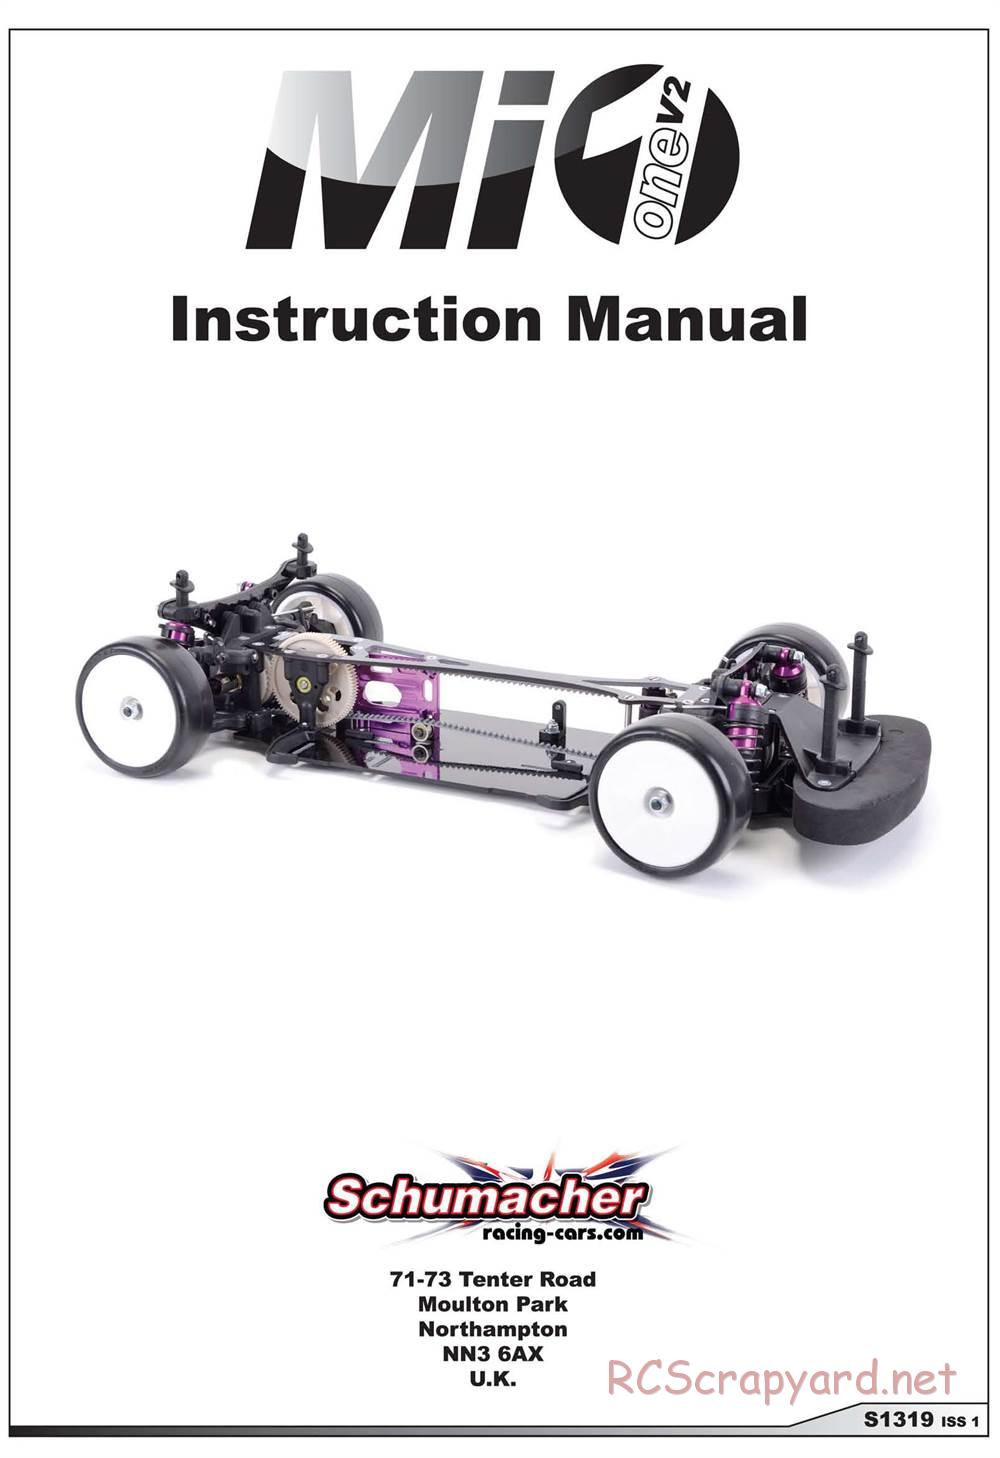 Schumacher - Mi1v2 - Manual - Page 1